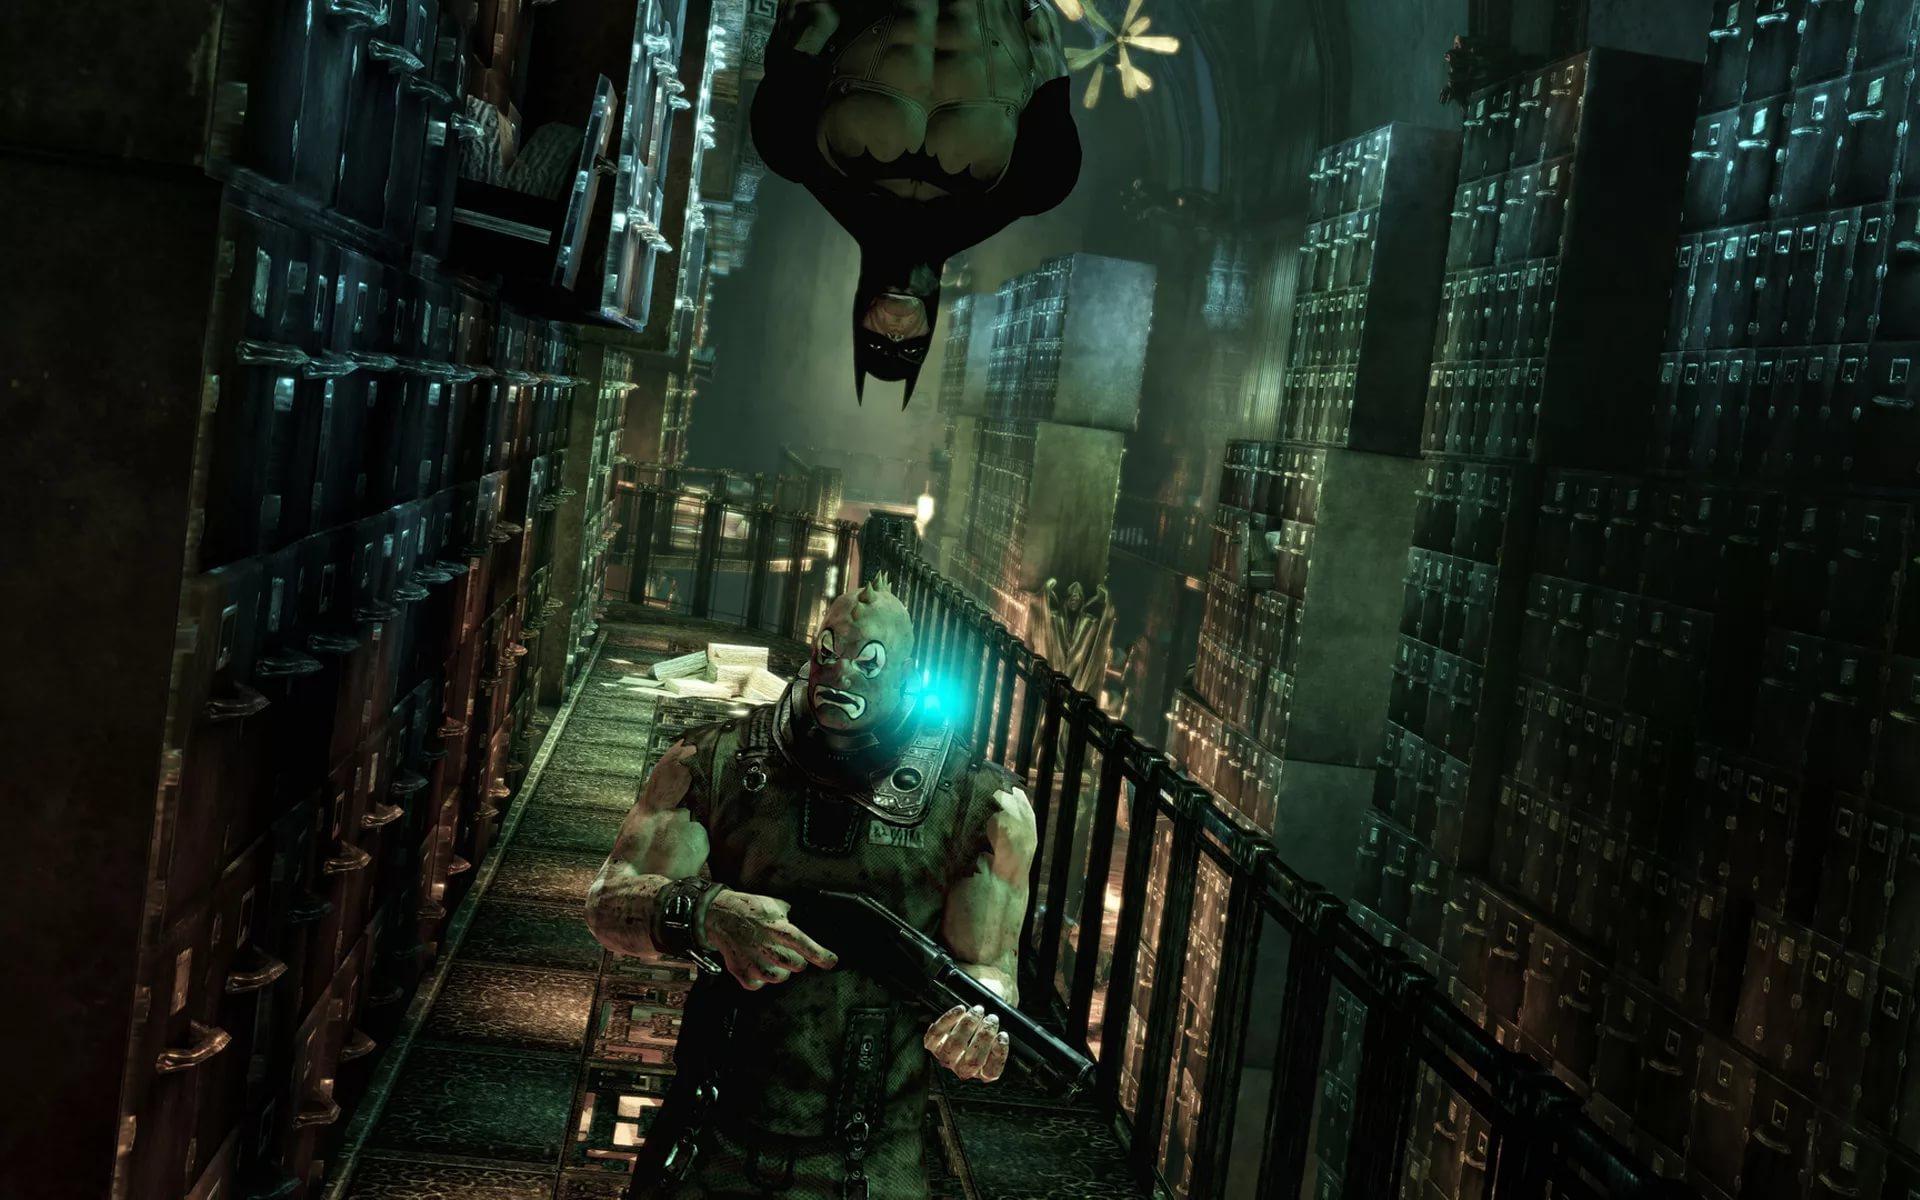 Бэтмен аркхам асайлум. Batman Arkham Asylum Xbox 360. Бэтмен Аркхем Asylum. Batman: Arkham Asylum (2009).